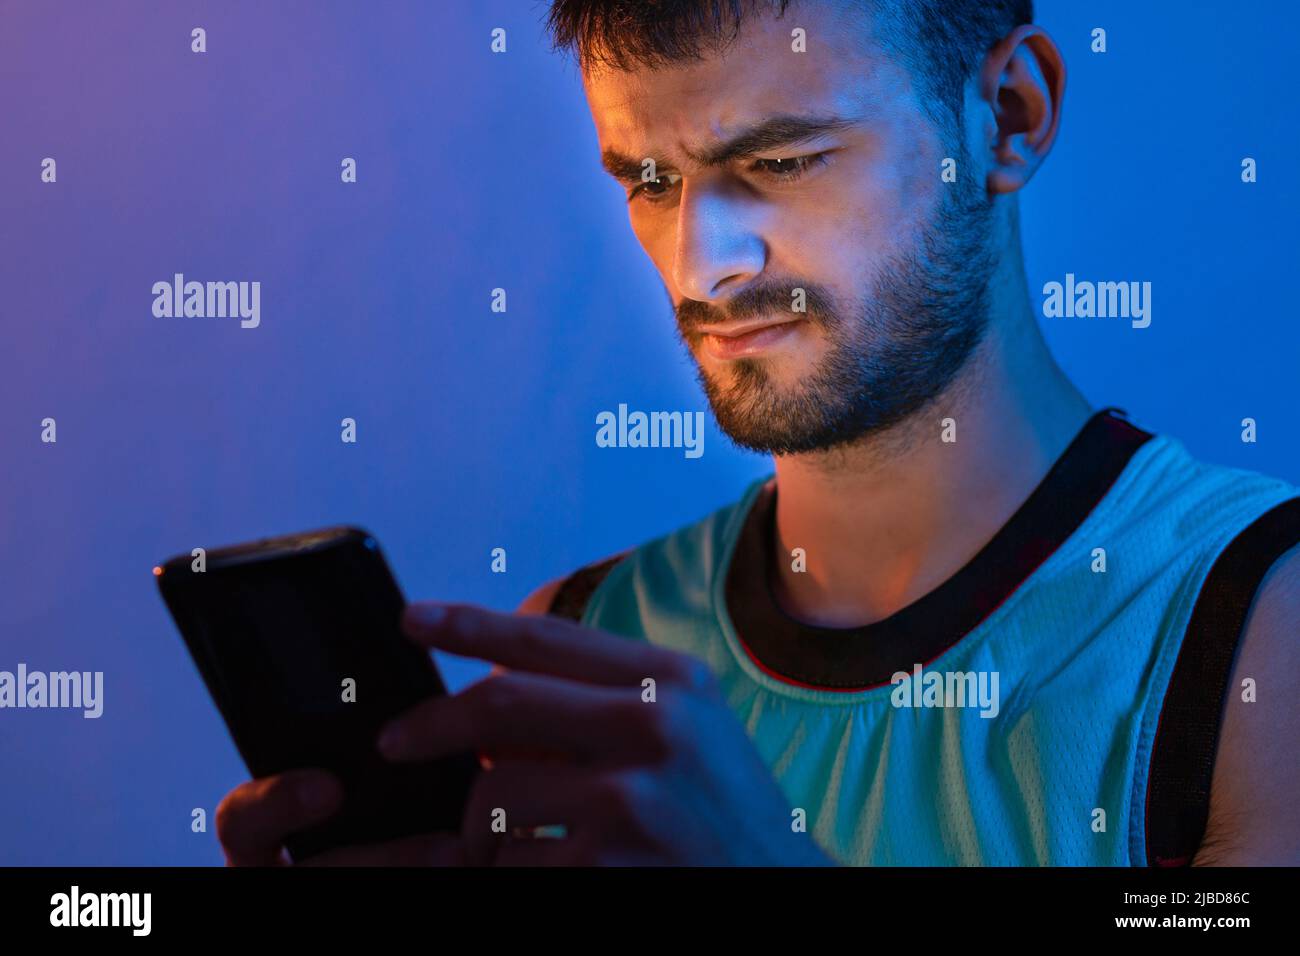 Porträt eines jungen kaukasischen Mannes mit Bart, der sein Handy benutzt. Sie wird mit blauen und orangefarbenen Lichtern beleuchtet. Stockfoto